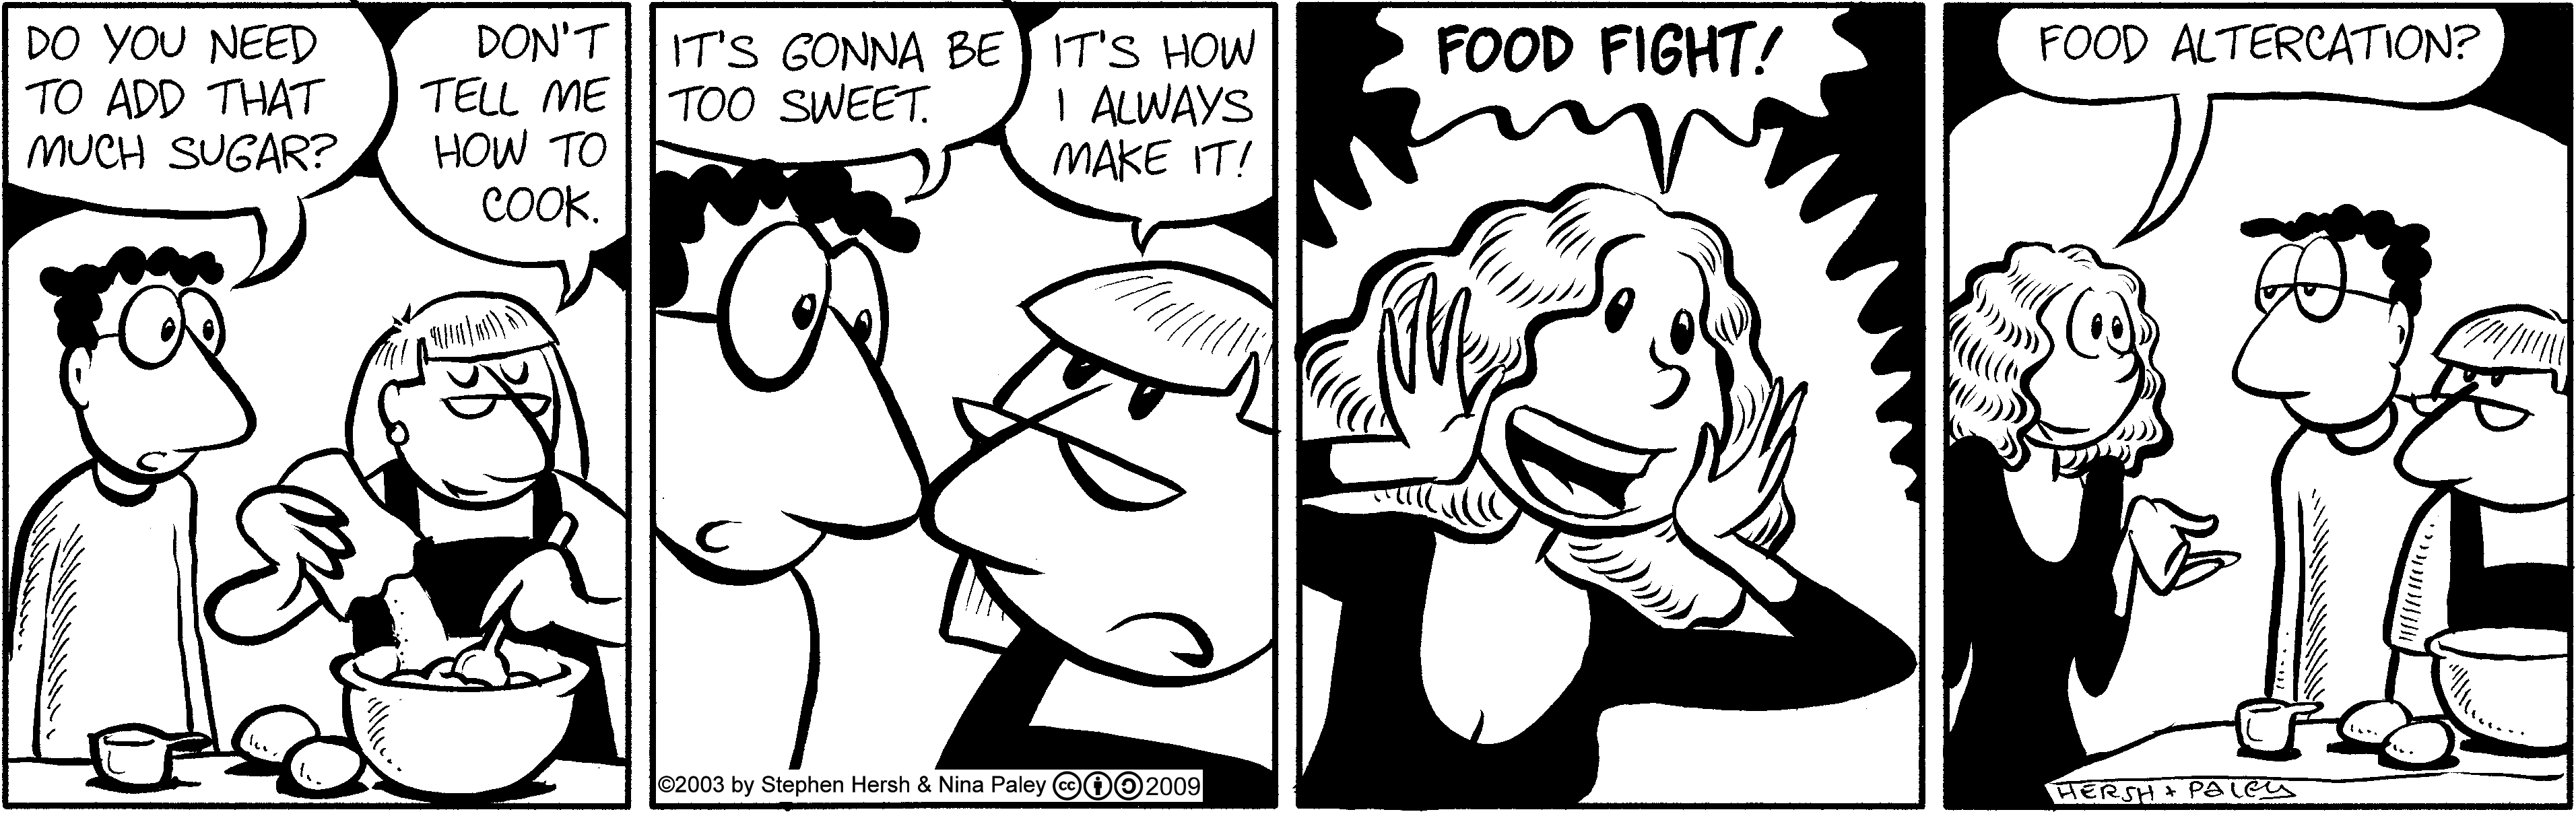 Foodfight